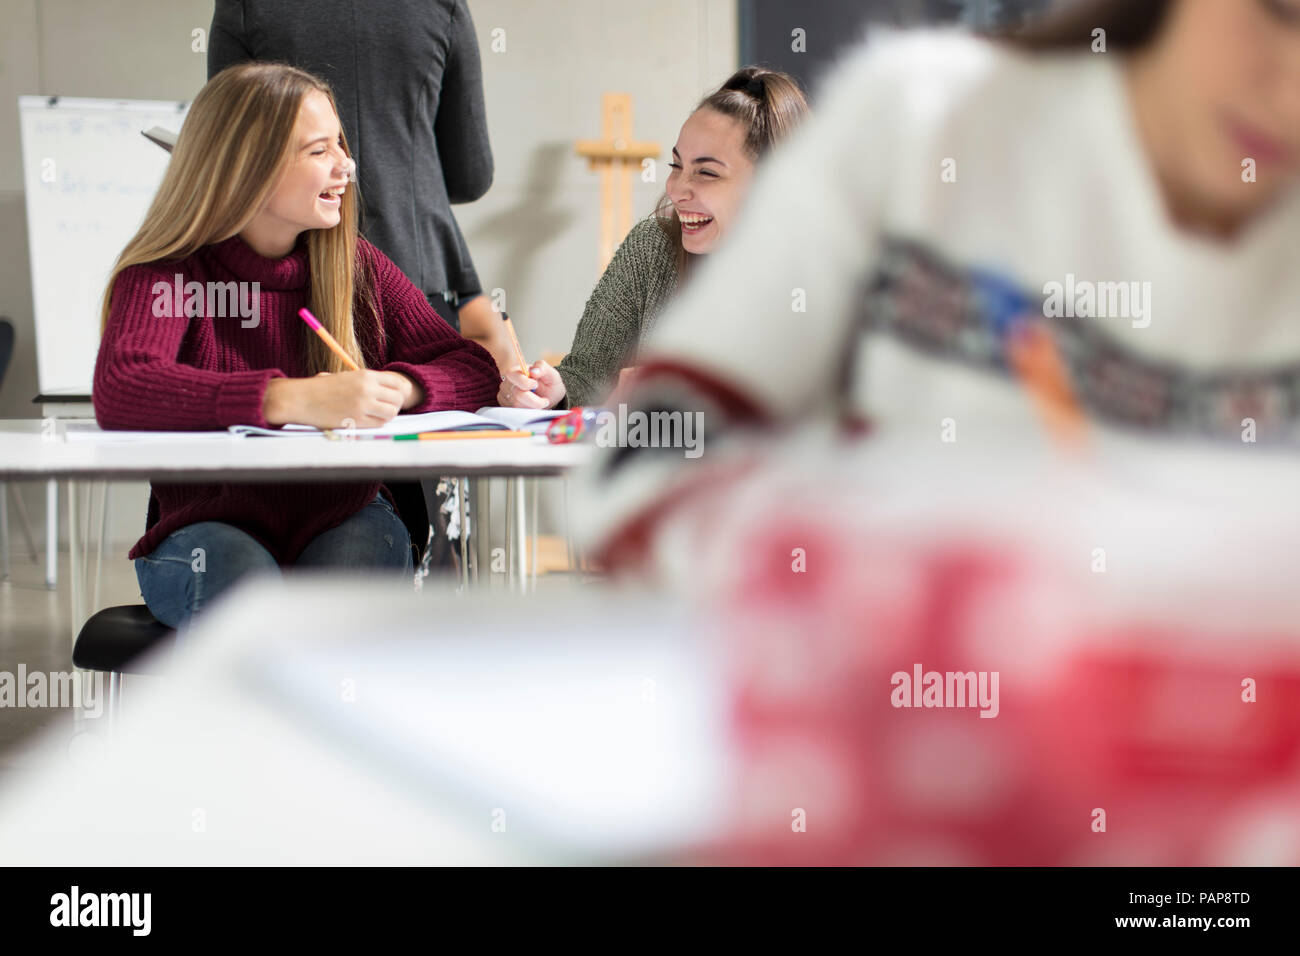 Glückliches Mädchen im Teenager-Alter sprechen in der Klasse Stockfoto